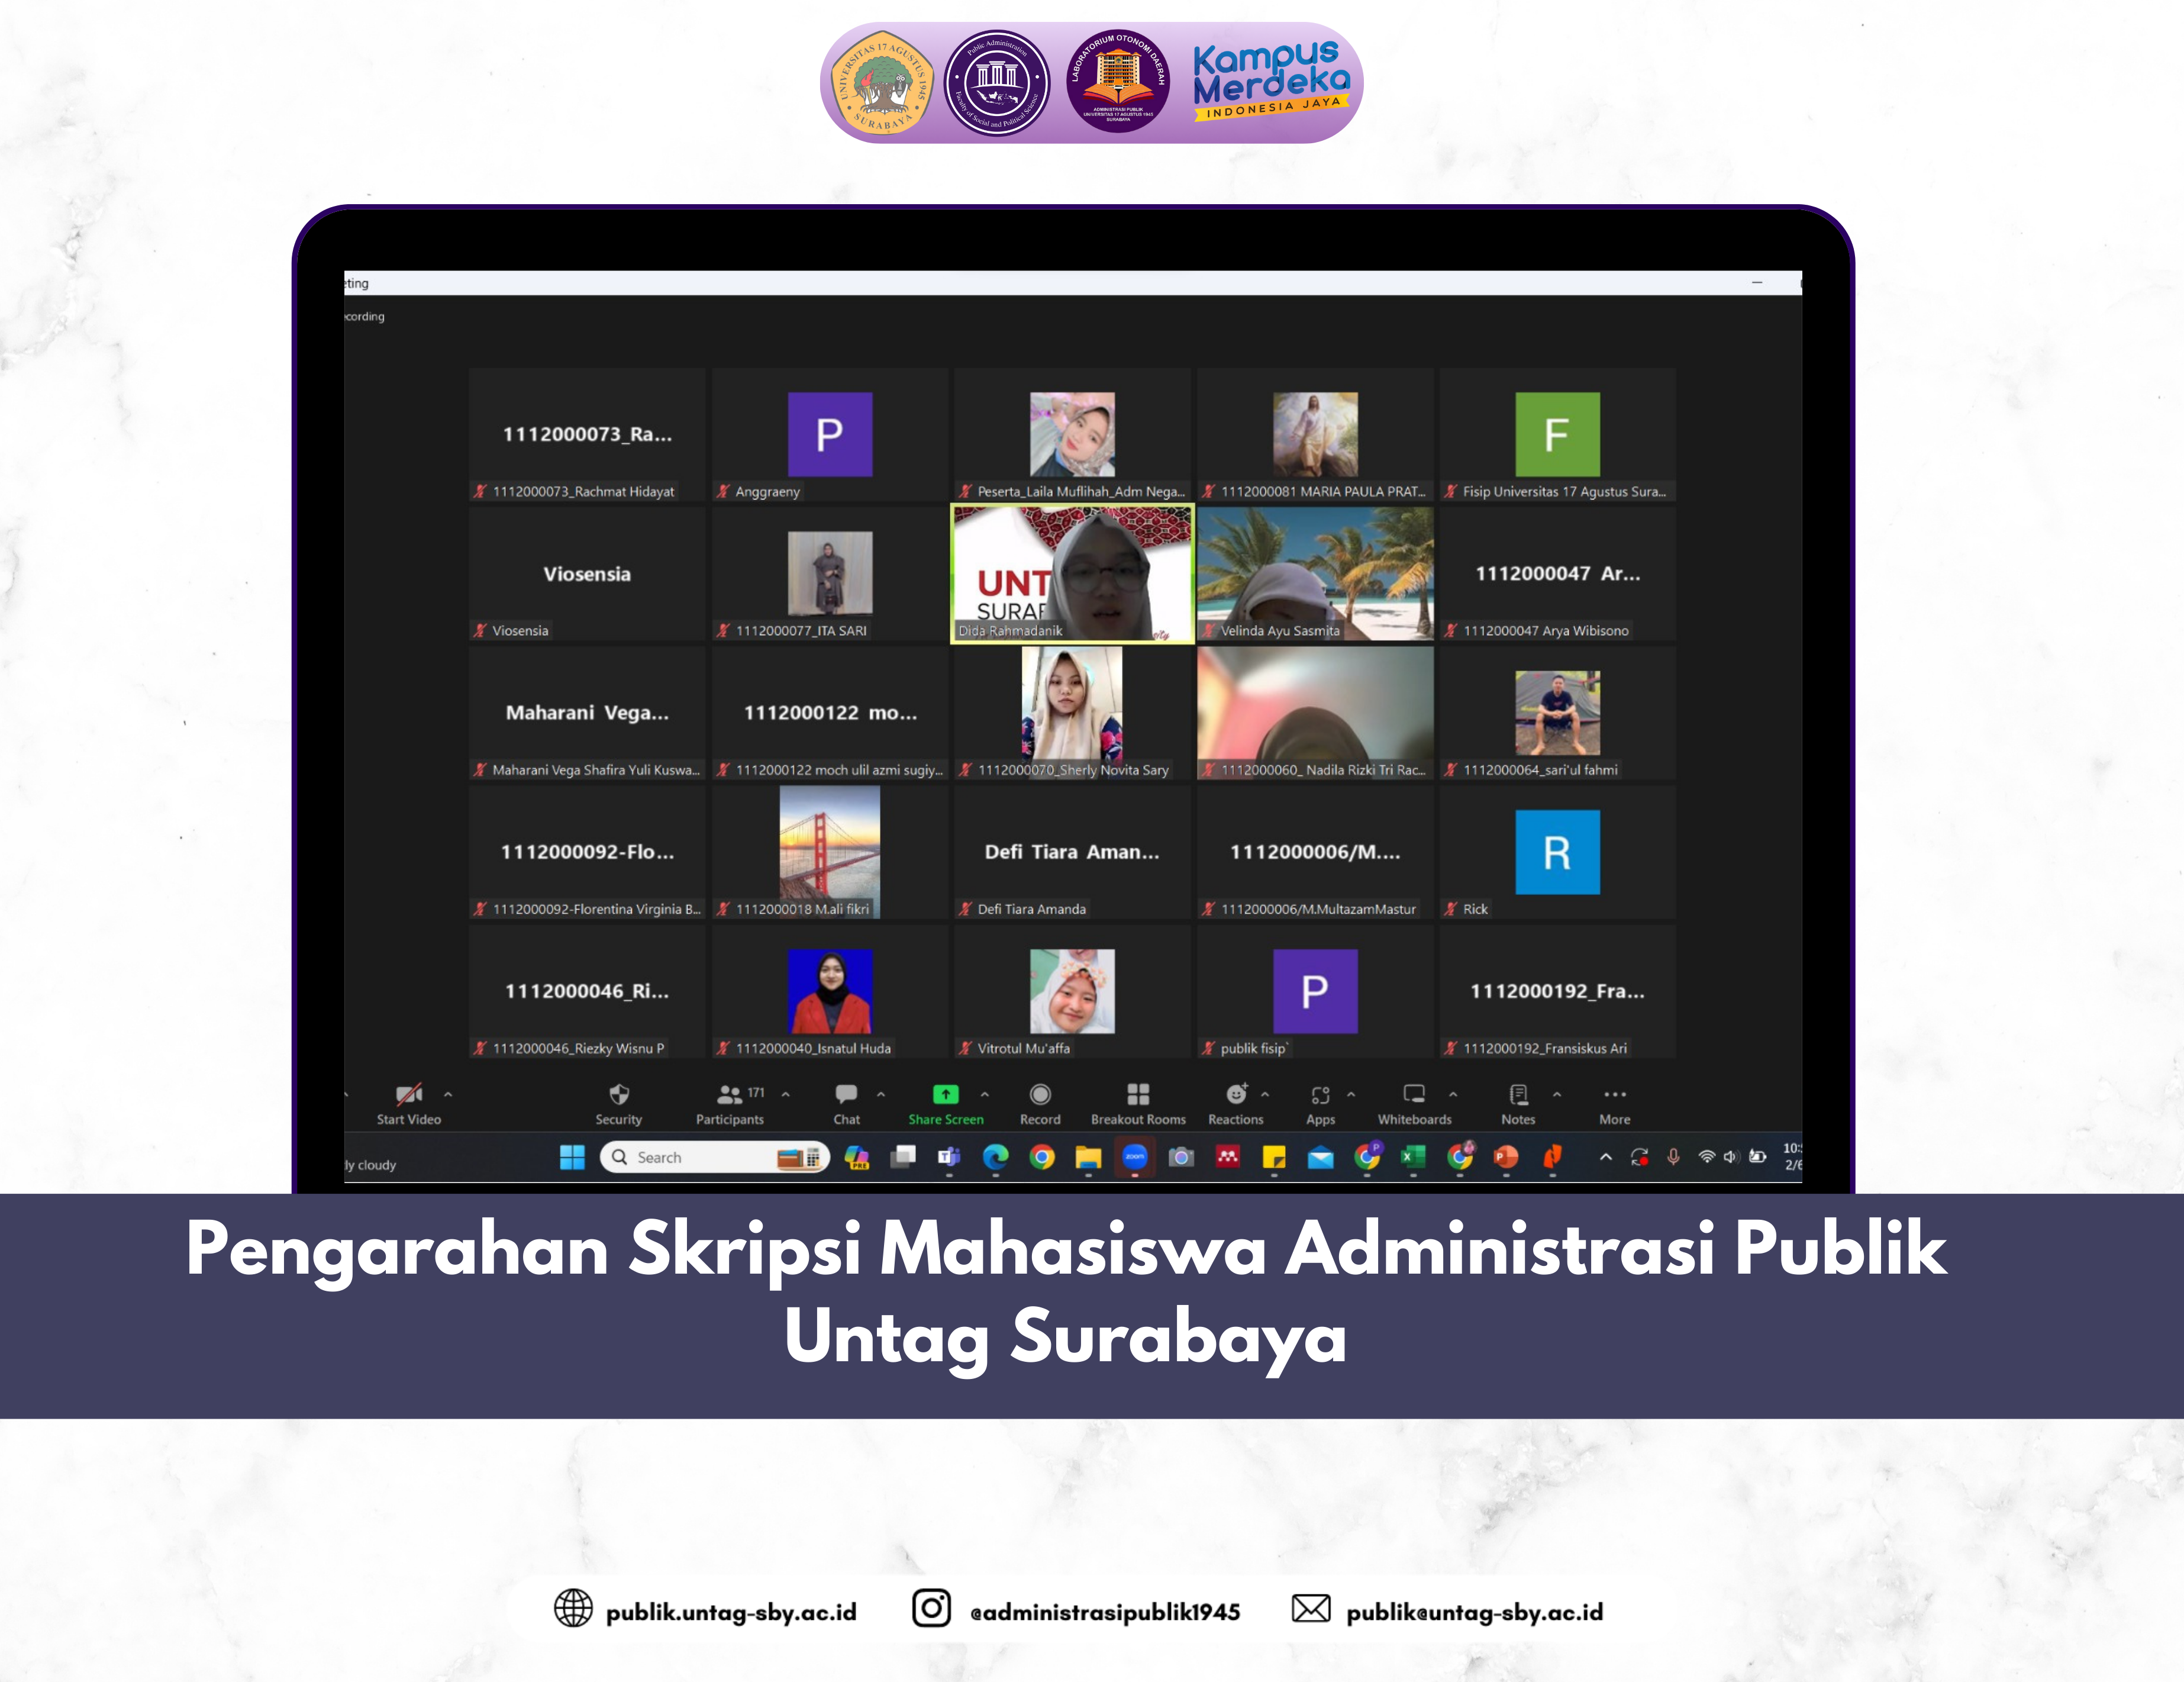 Pengarahan Skripsi Mahasiswa Administrasi Publik Untag Surabaya